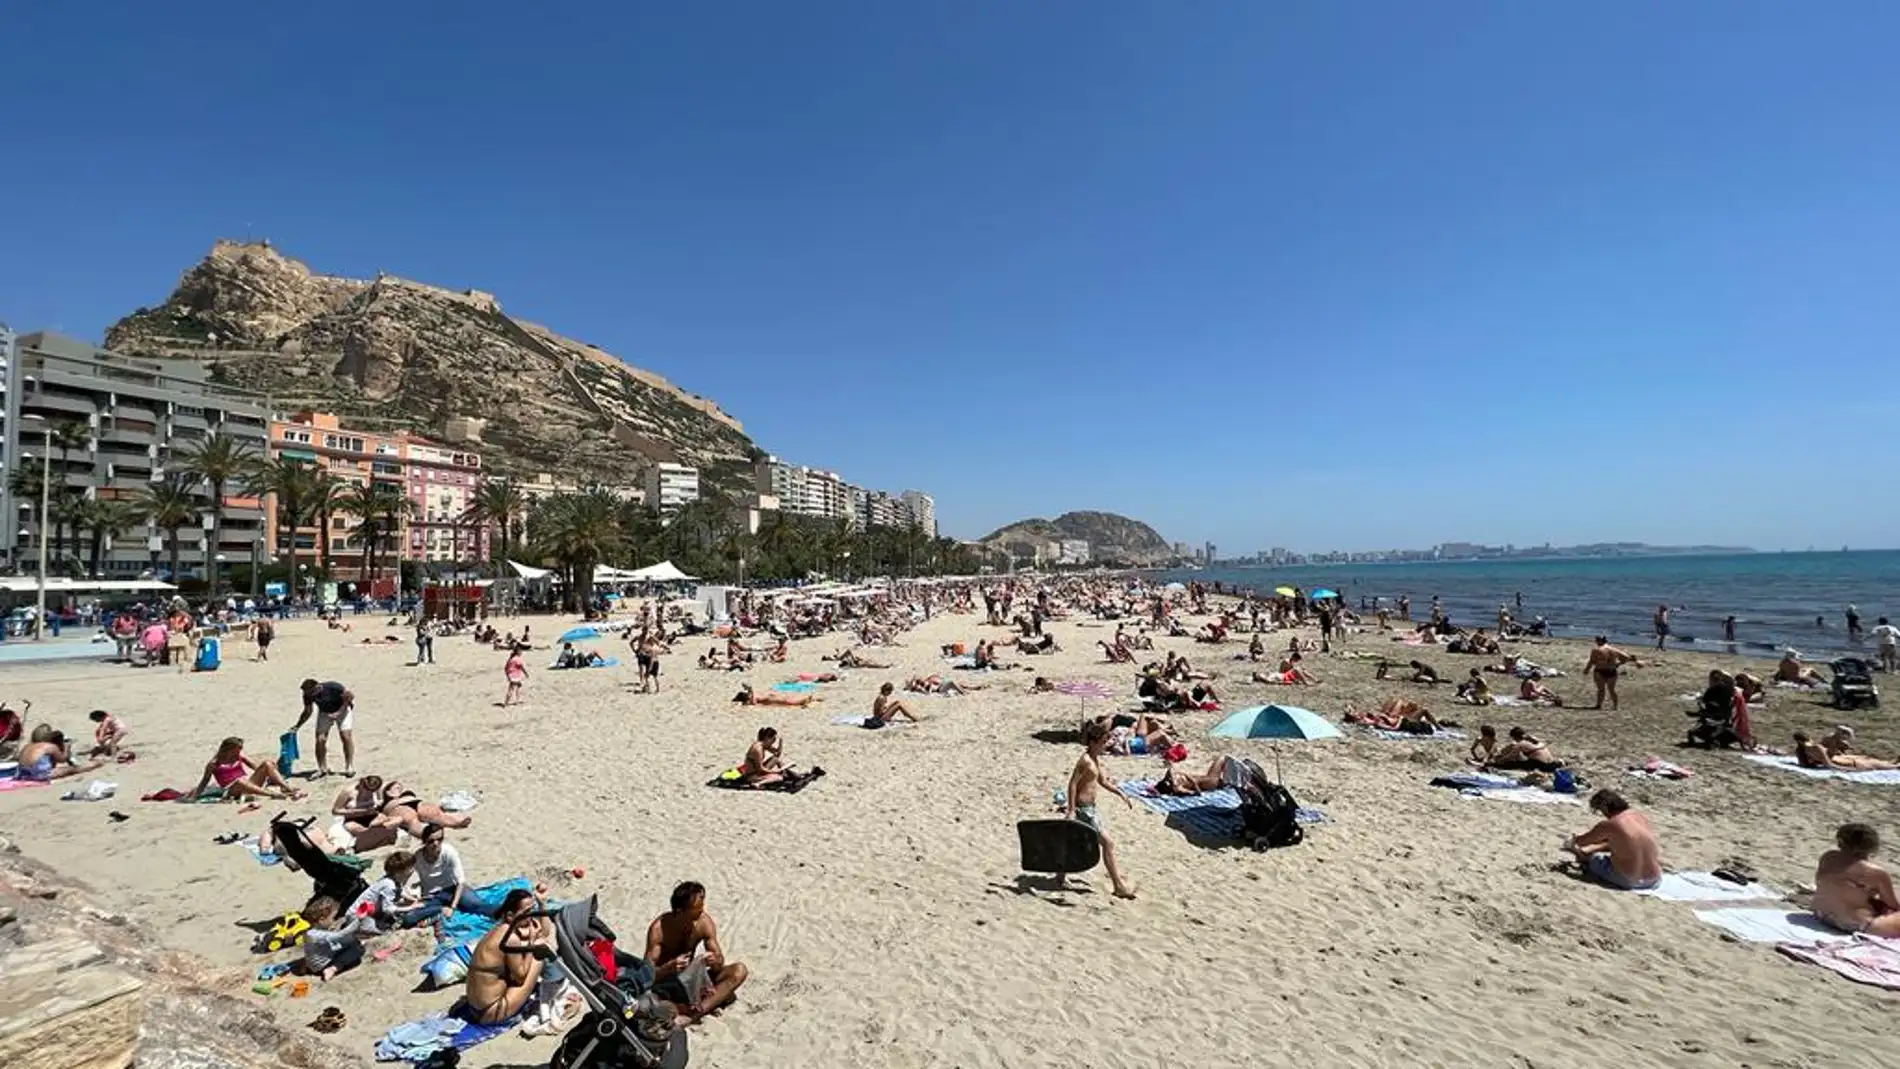 Imagen de la playa del Postiguet de Alicante